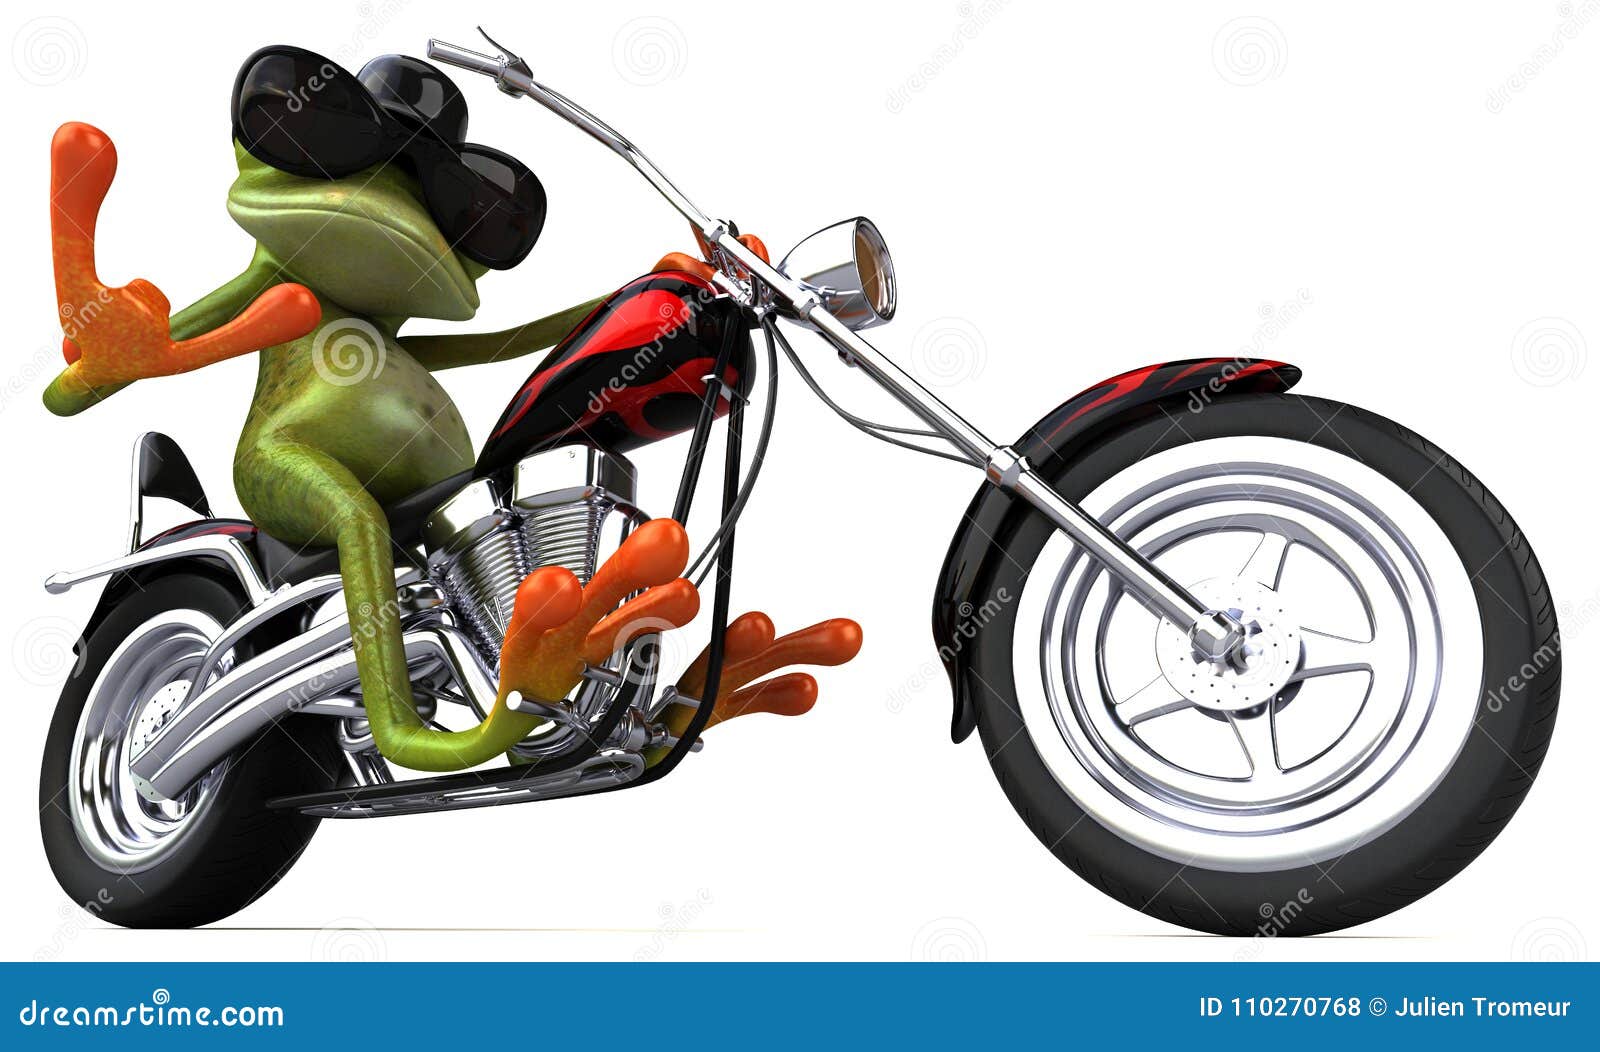 Лягушка на мотоцикле клип. Лягушка на мотоцикле. Лягушонок на мотоцикле. Жаба на мотоцикле. Зеленая лягушка на мотоцикле.